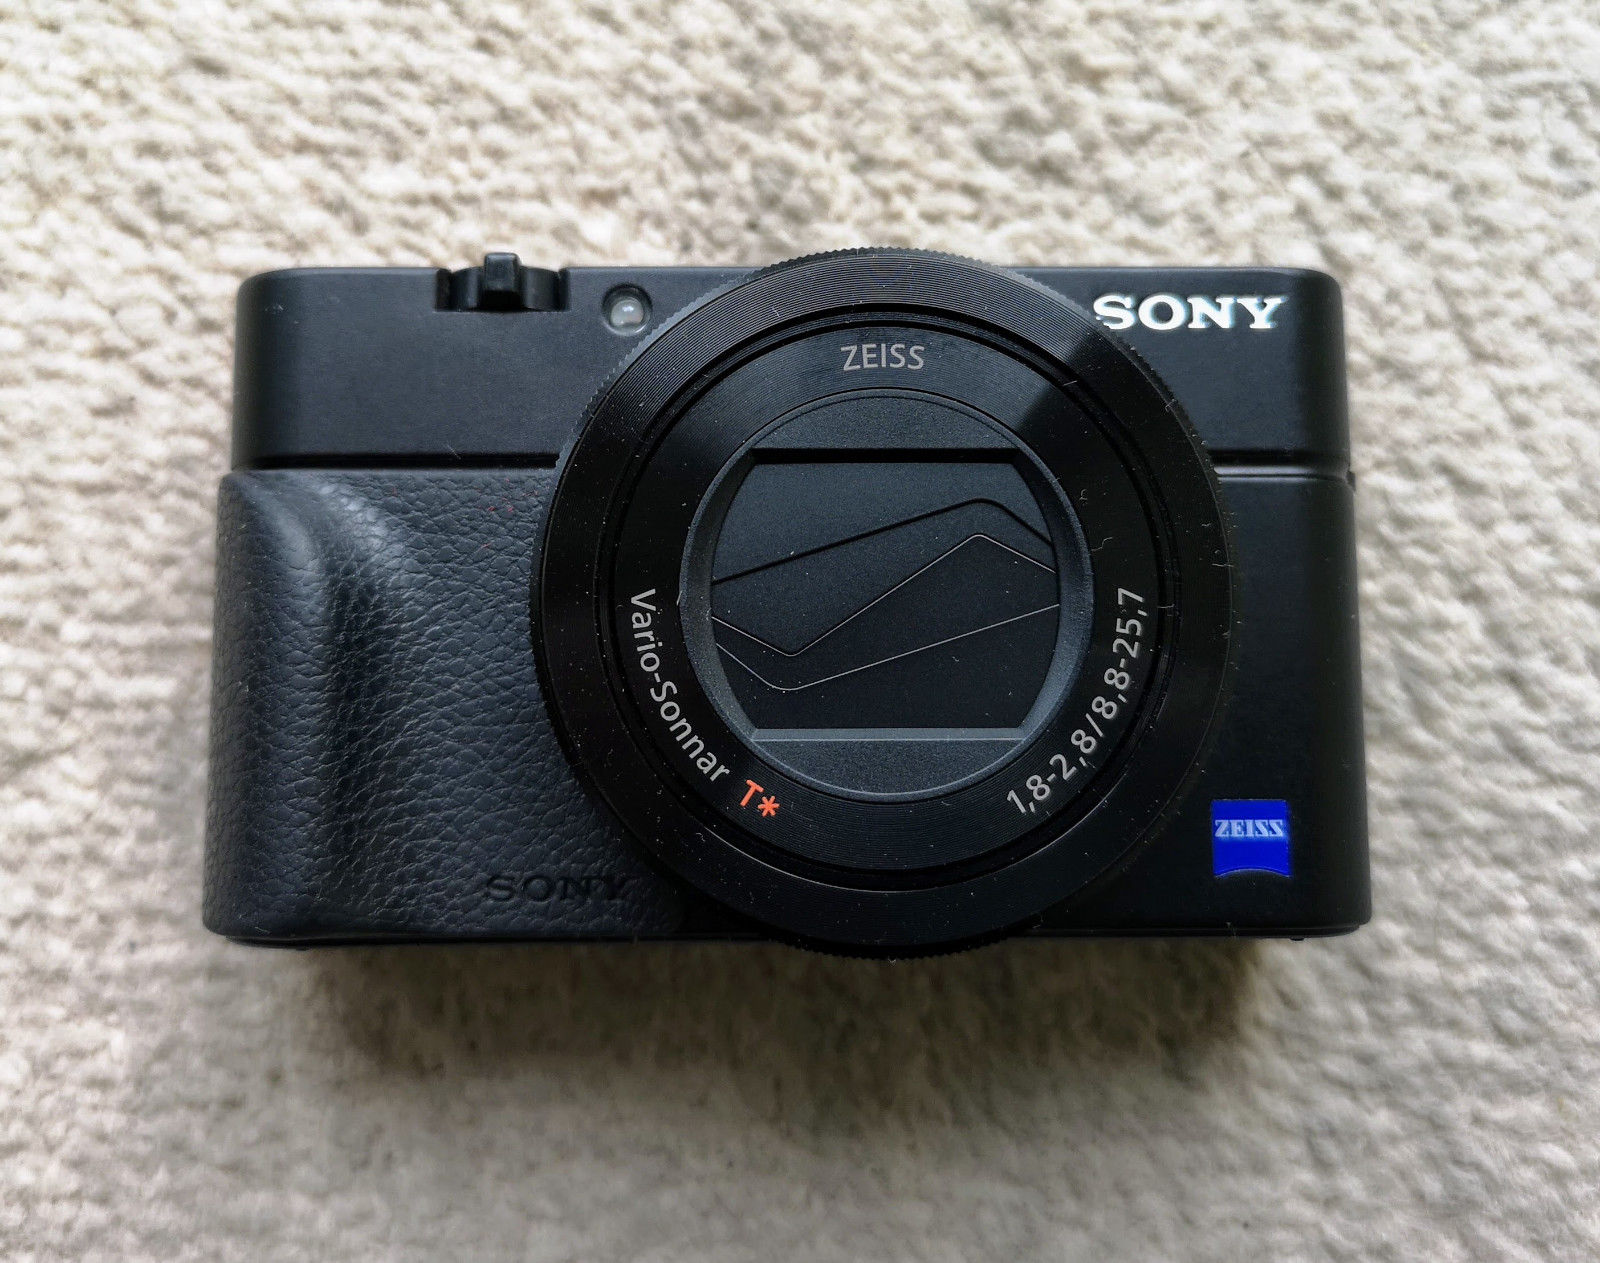 Sony Cyber-shot DSC-RX100M3 20.1 MP Digitalkamera, mit WiFi und NFC- Funktion